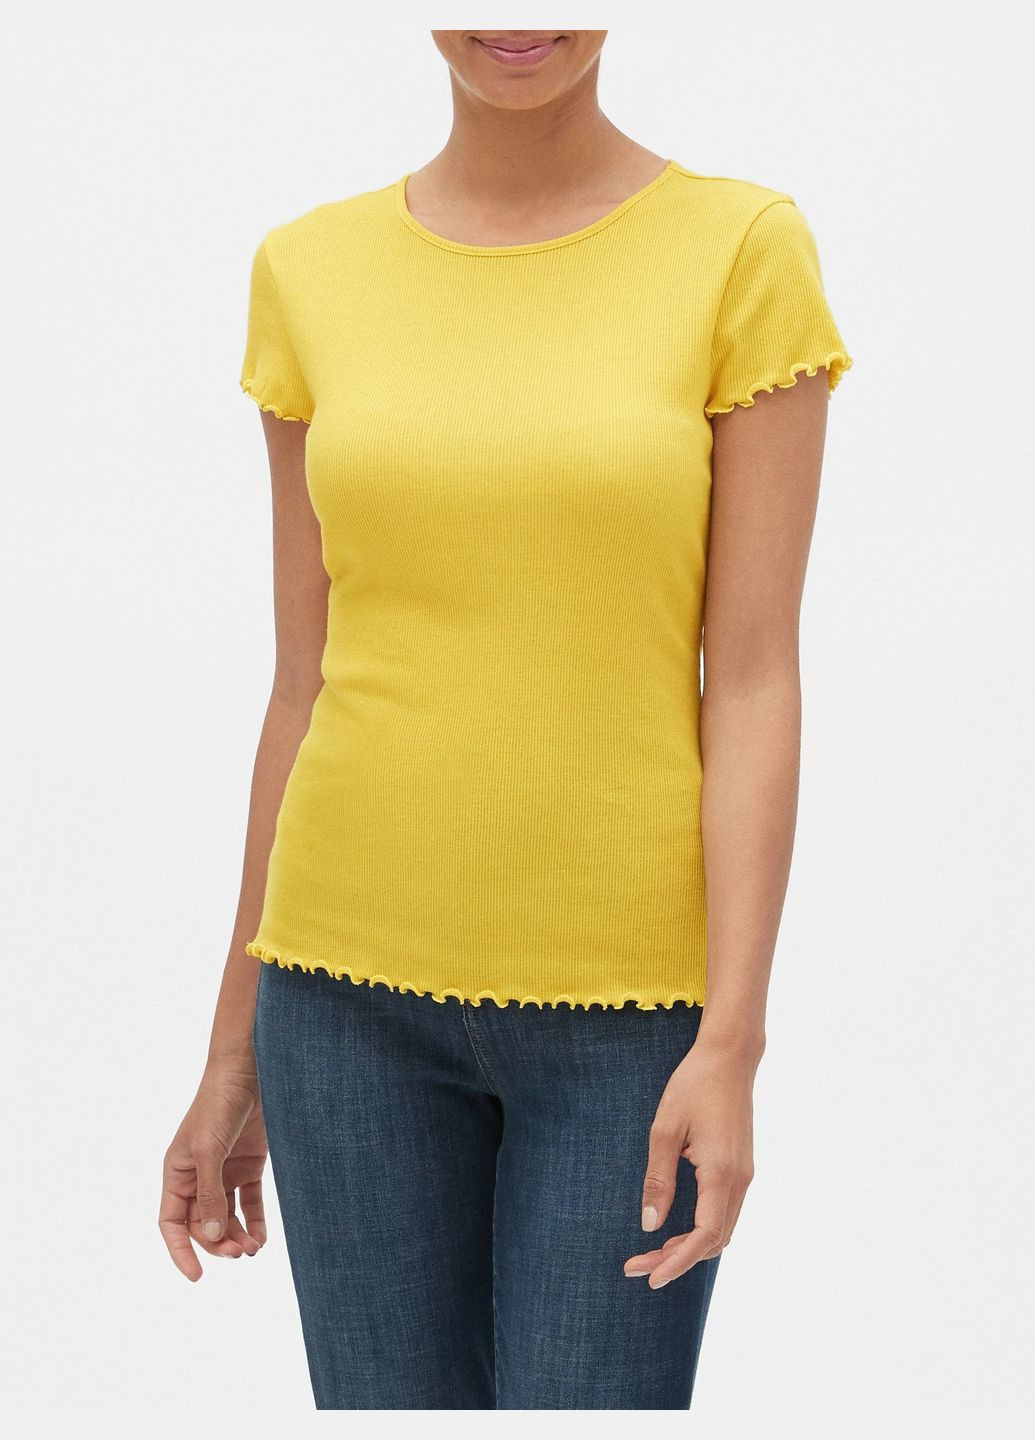 Желтая летняя желтая футболка - женская футболка ga0647w Gap